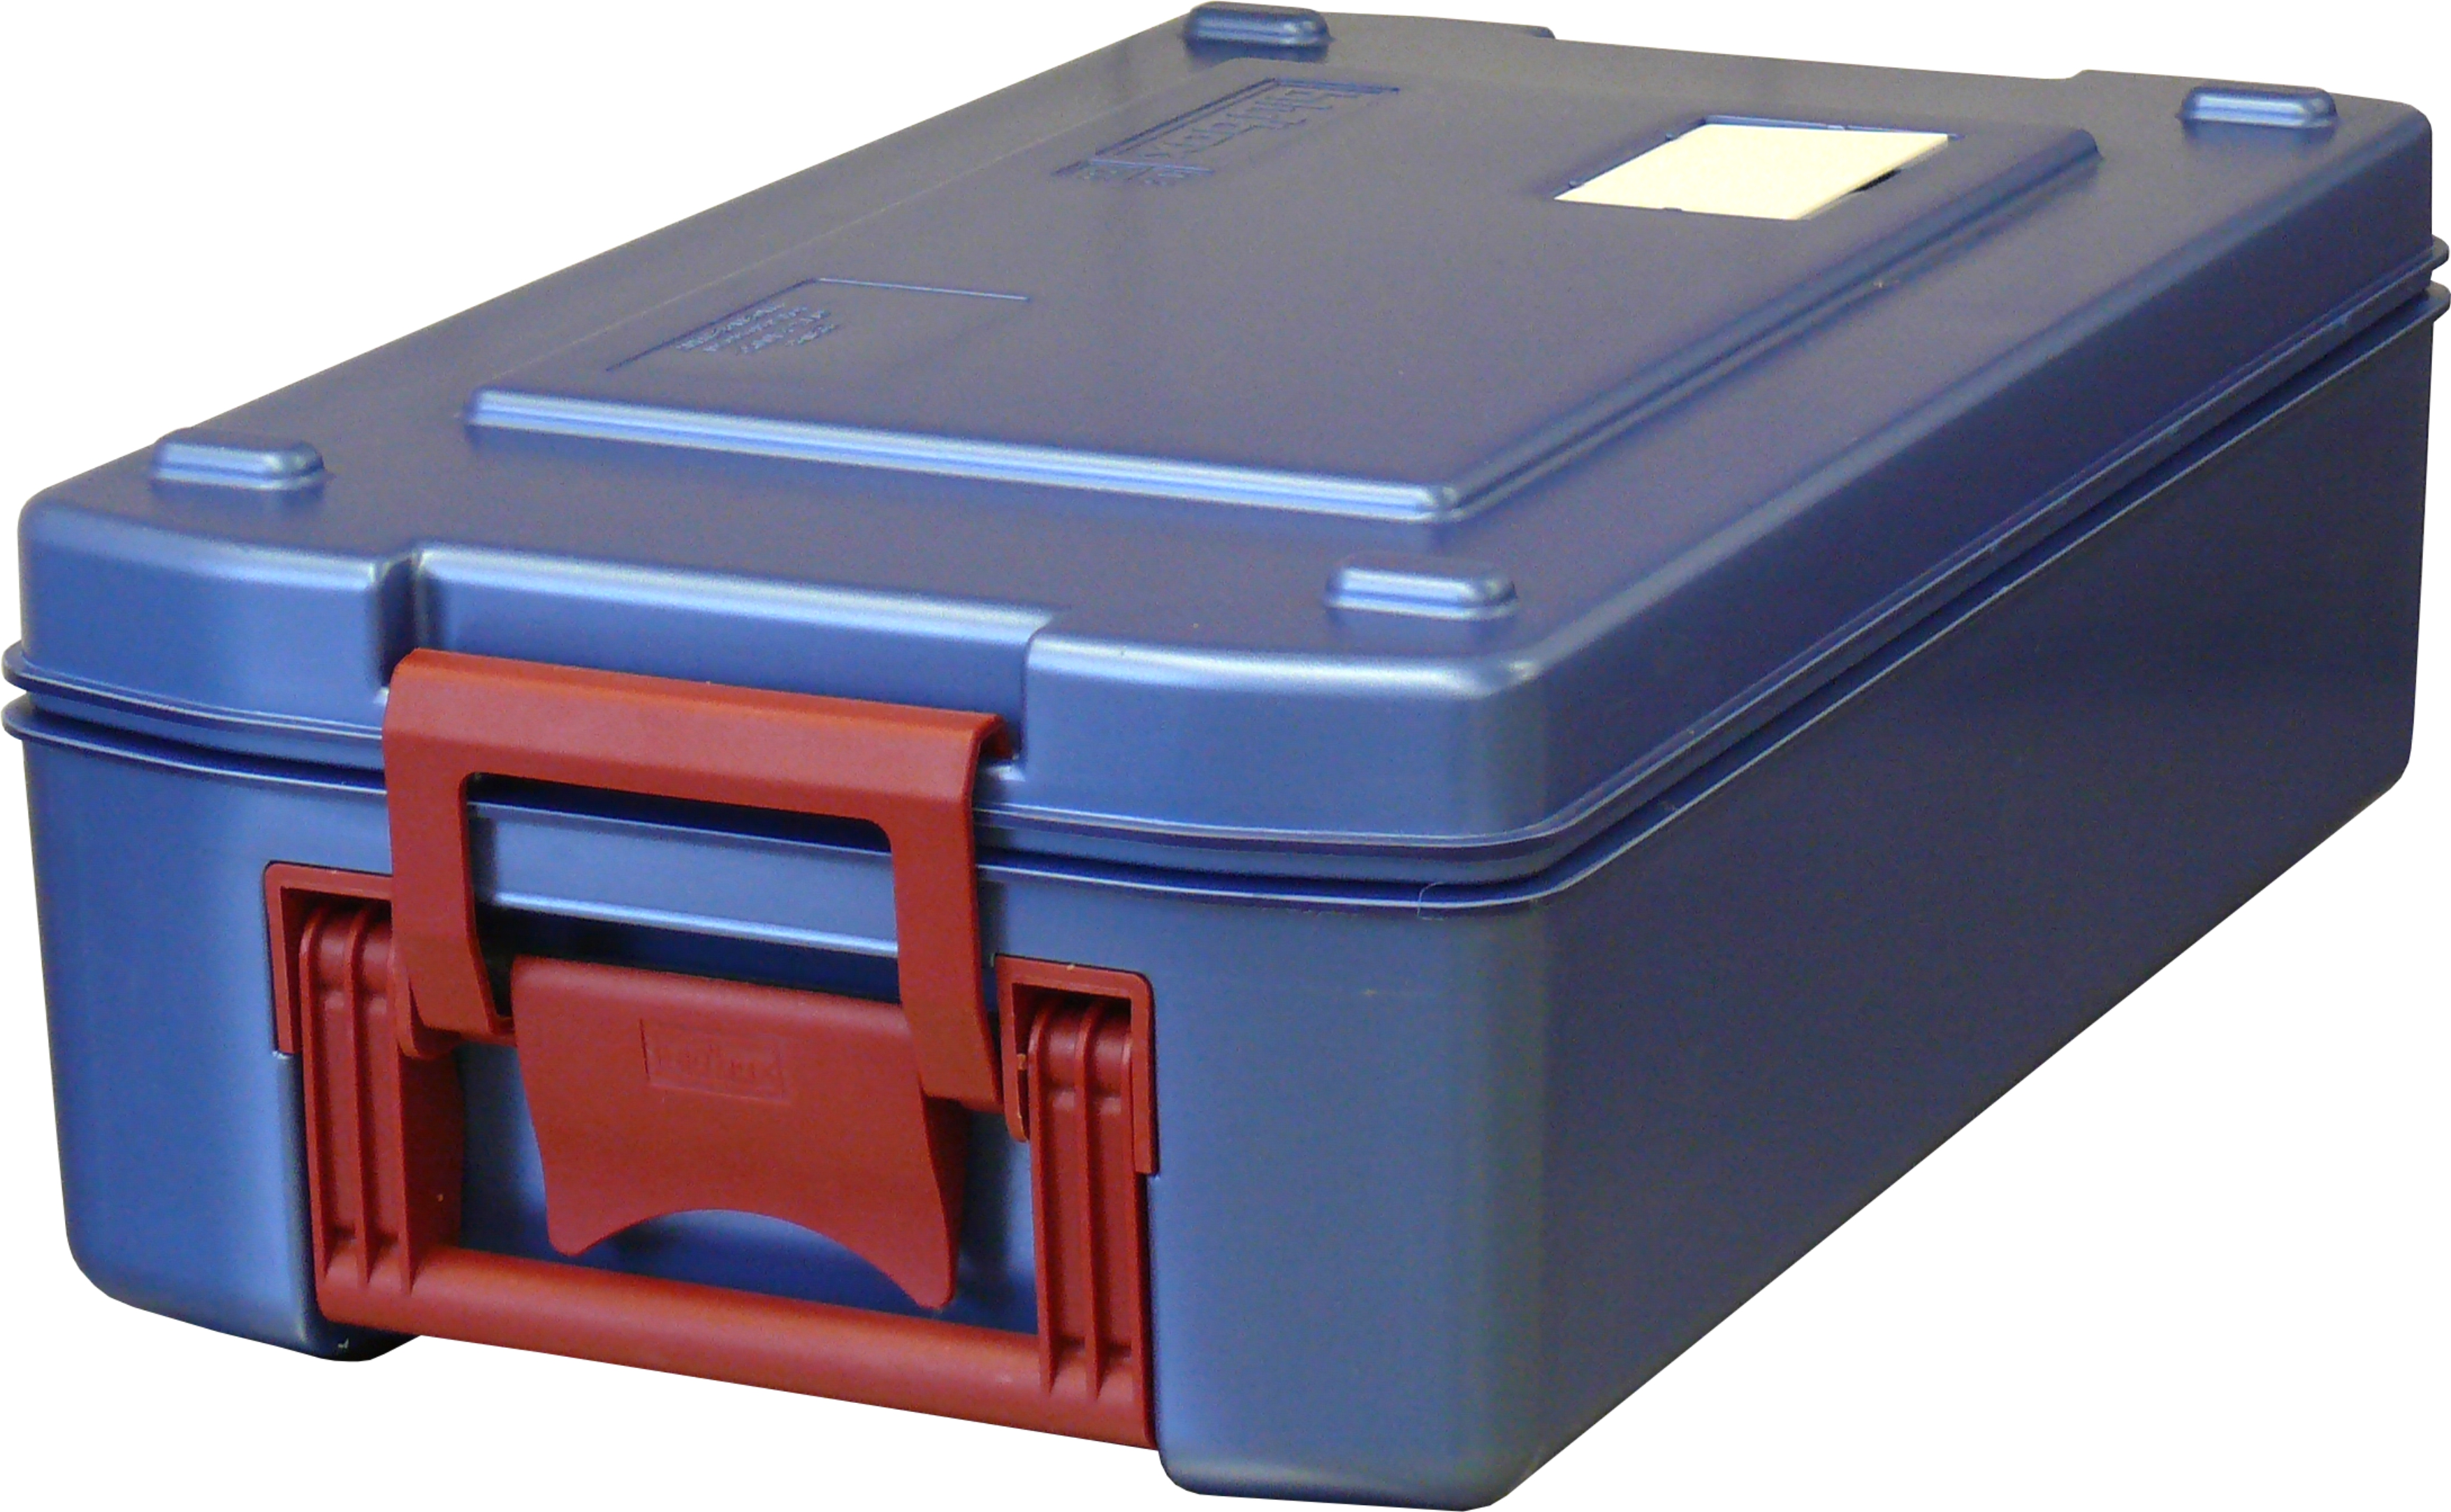 Blu’Box 13 - solide Basis für den temperatursensiblen Speisentransport